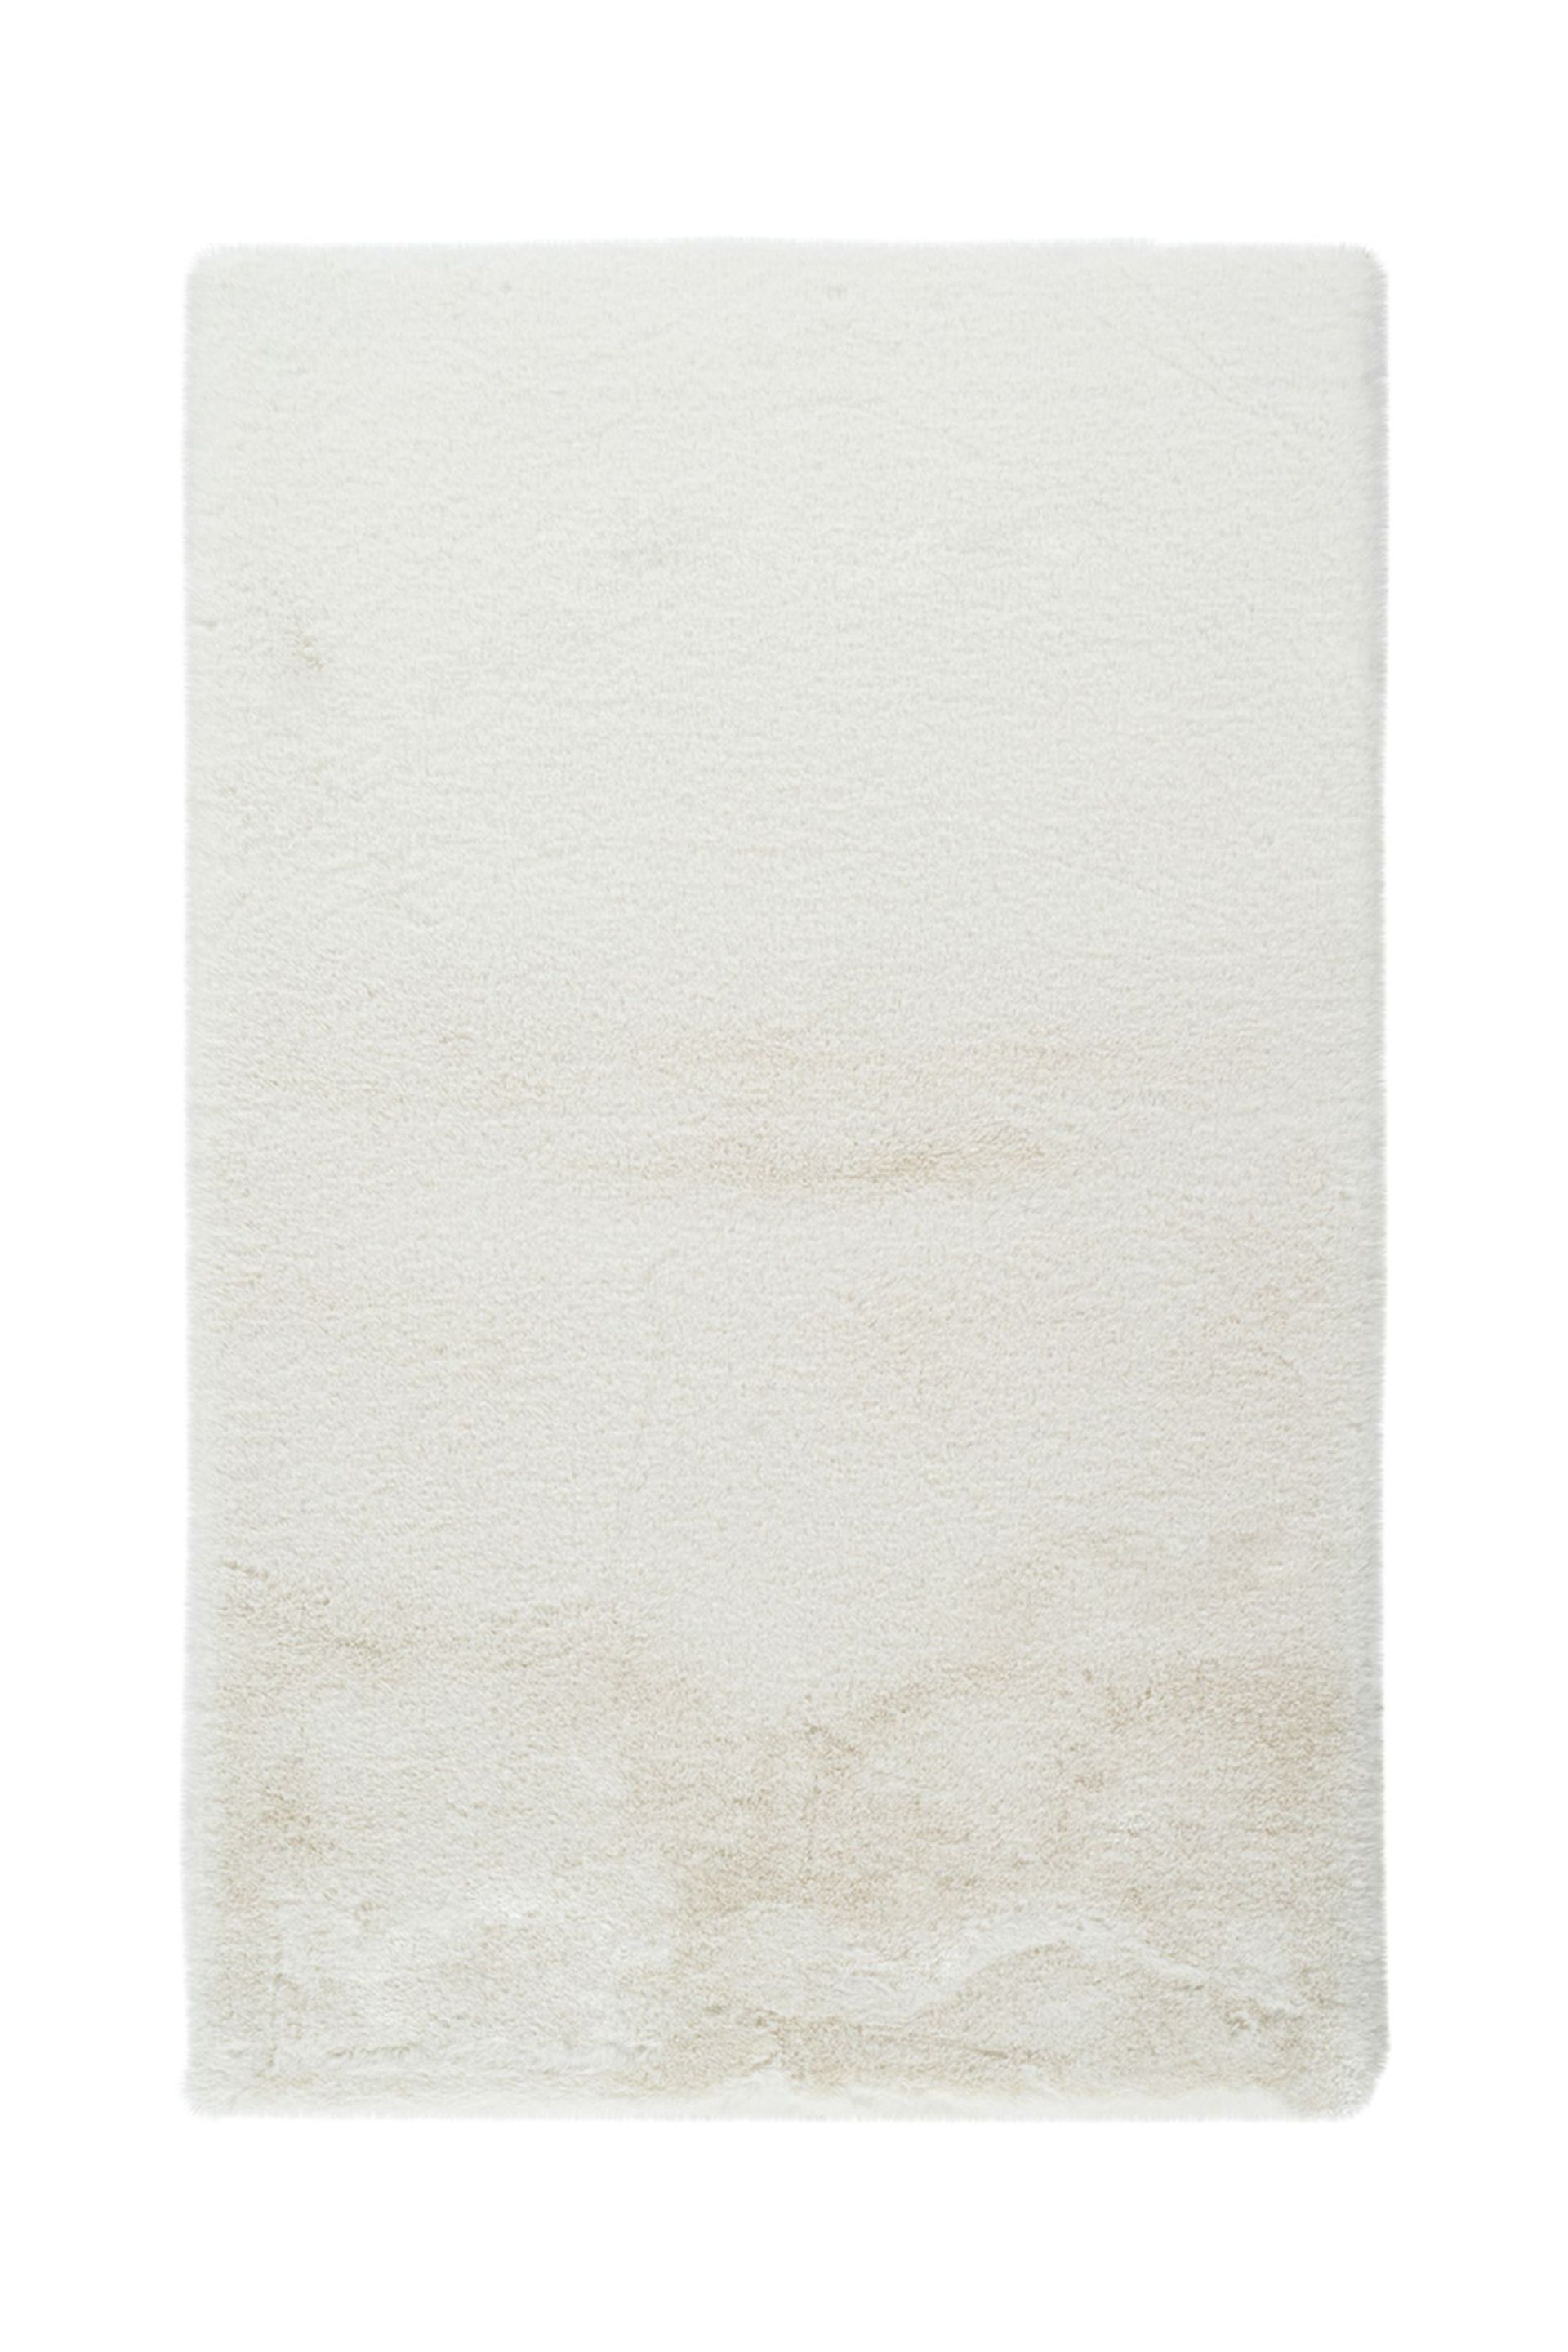 Badematte Rabbit Light 625 Weiß 65 cm x 100 cm